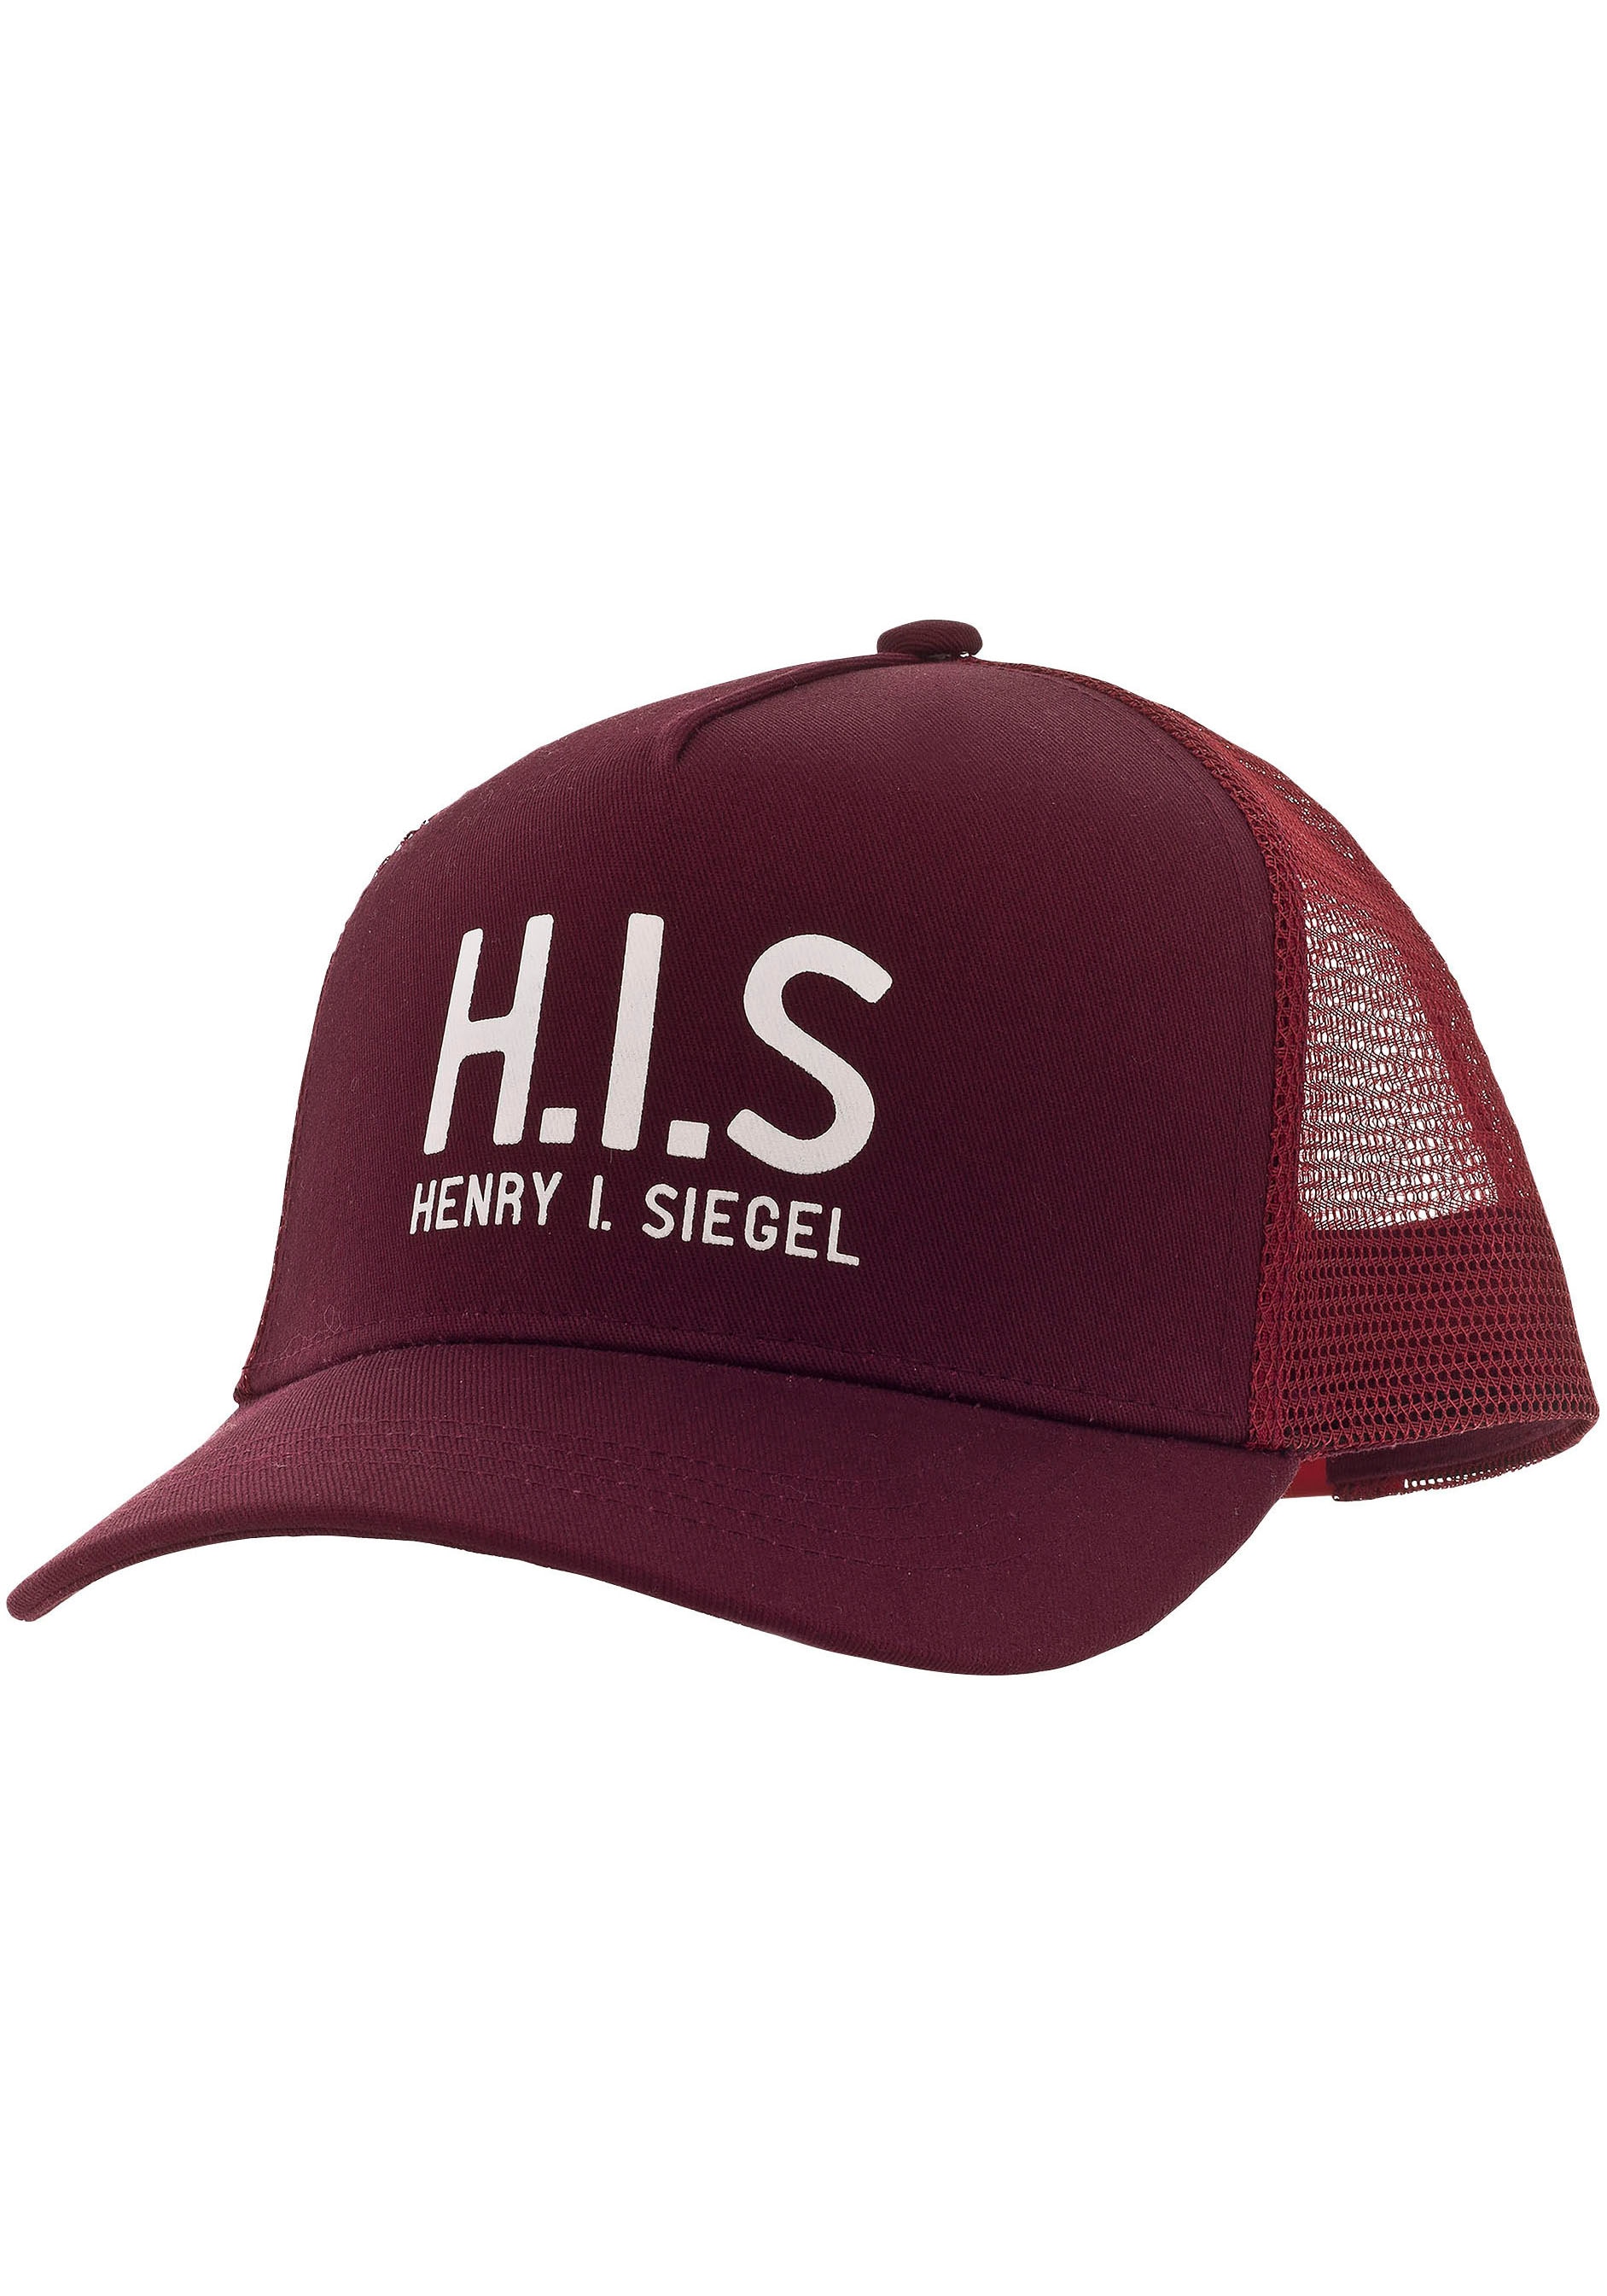 H.I.S Baseball Cap, Mesh-Cap mit H.I.S.-Print